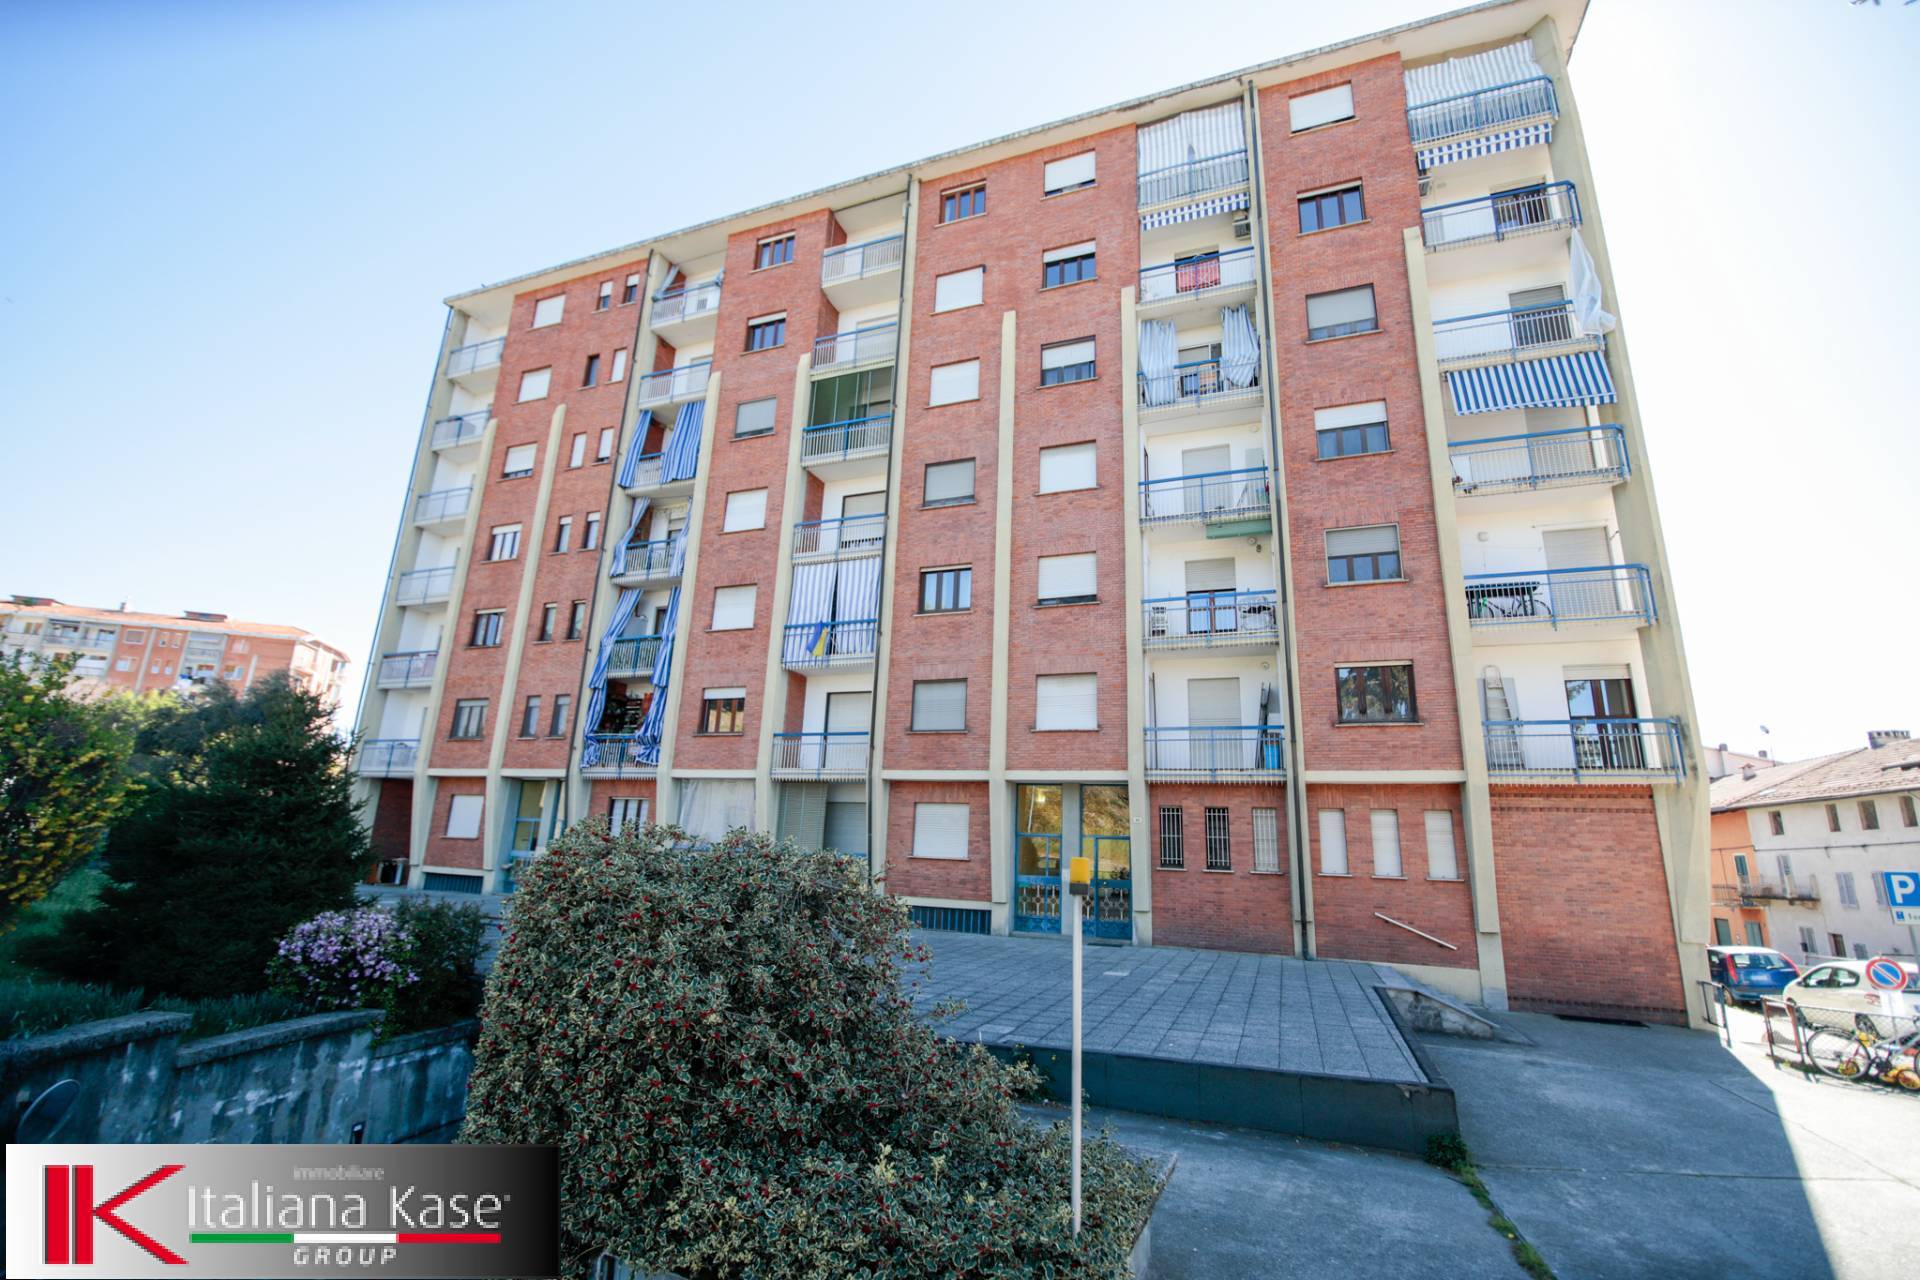 Appartamento in vendita a Caluso, 4 locali, zona Località: Caluso, prezzo € 35.000 | PortaleAgenzieImmobiliari.it